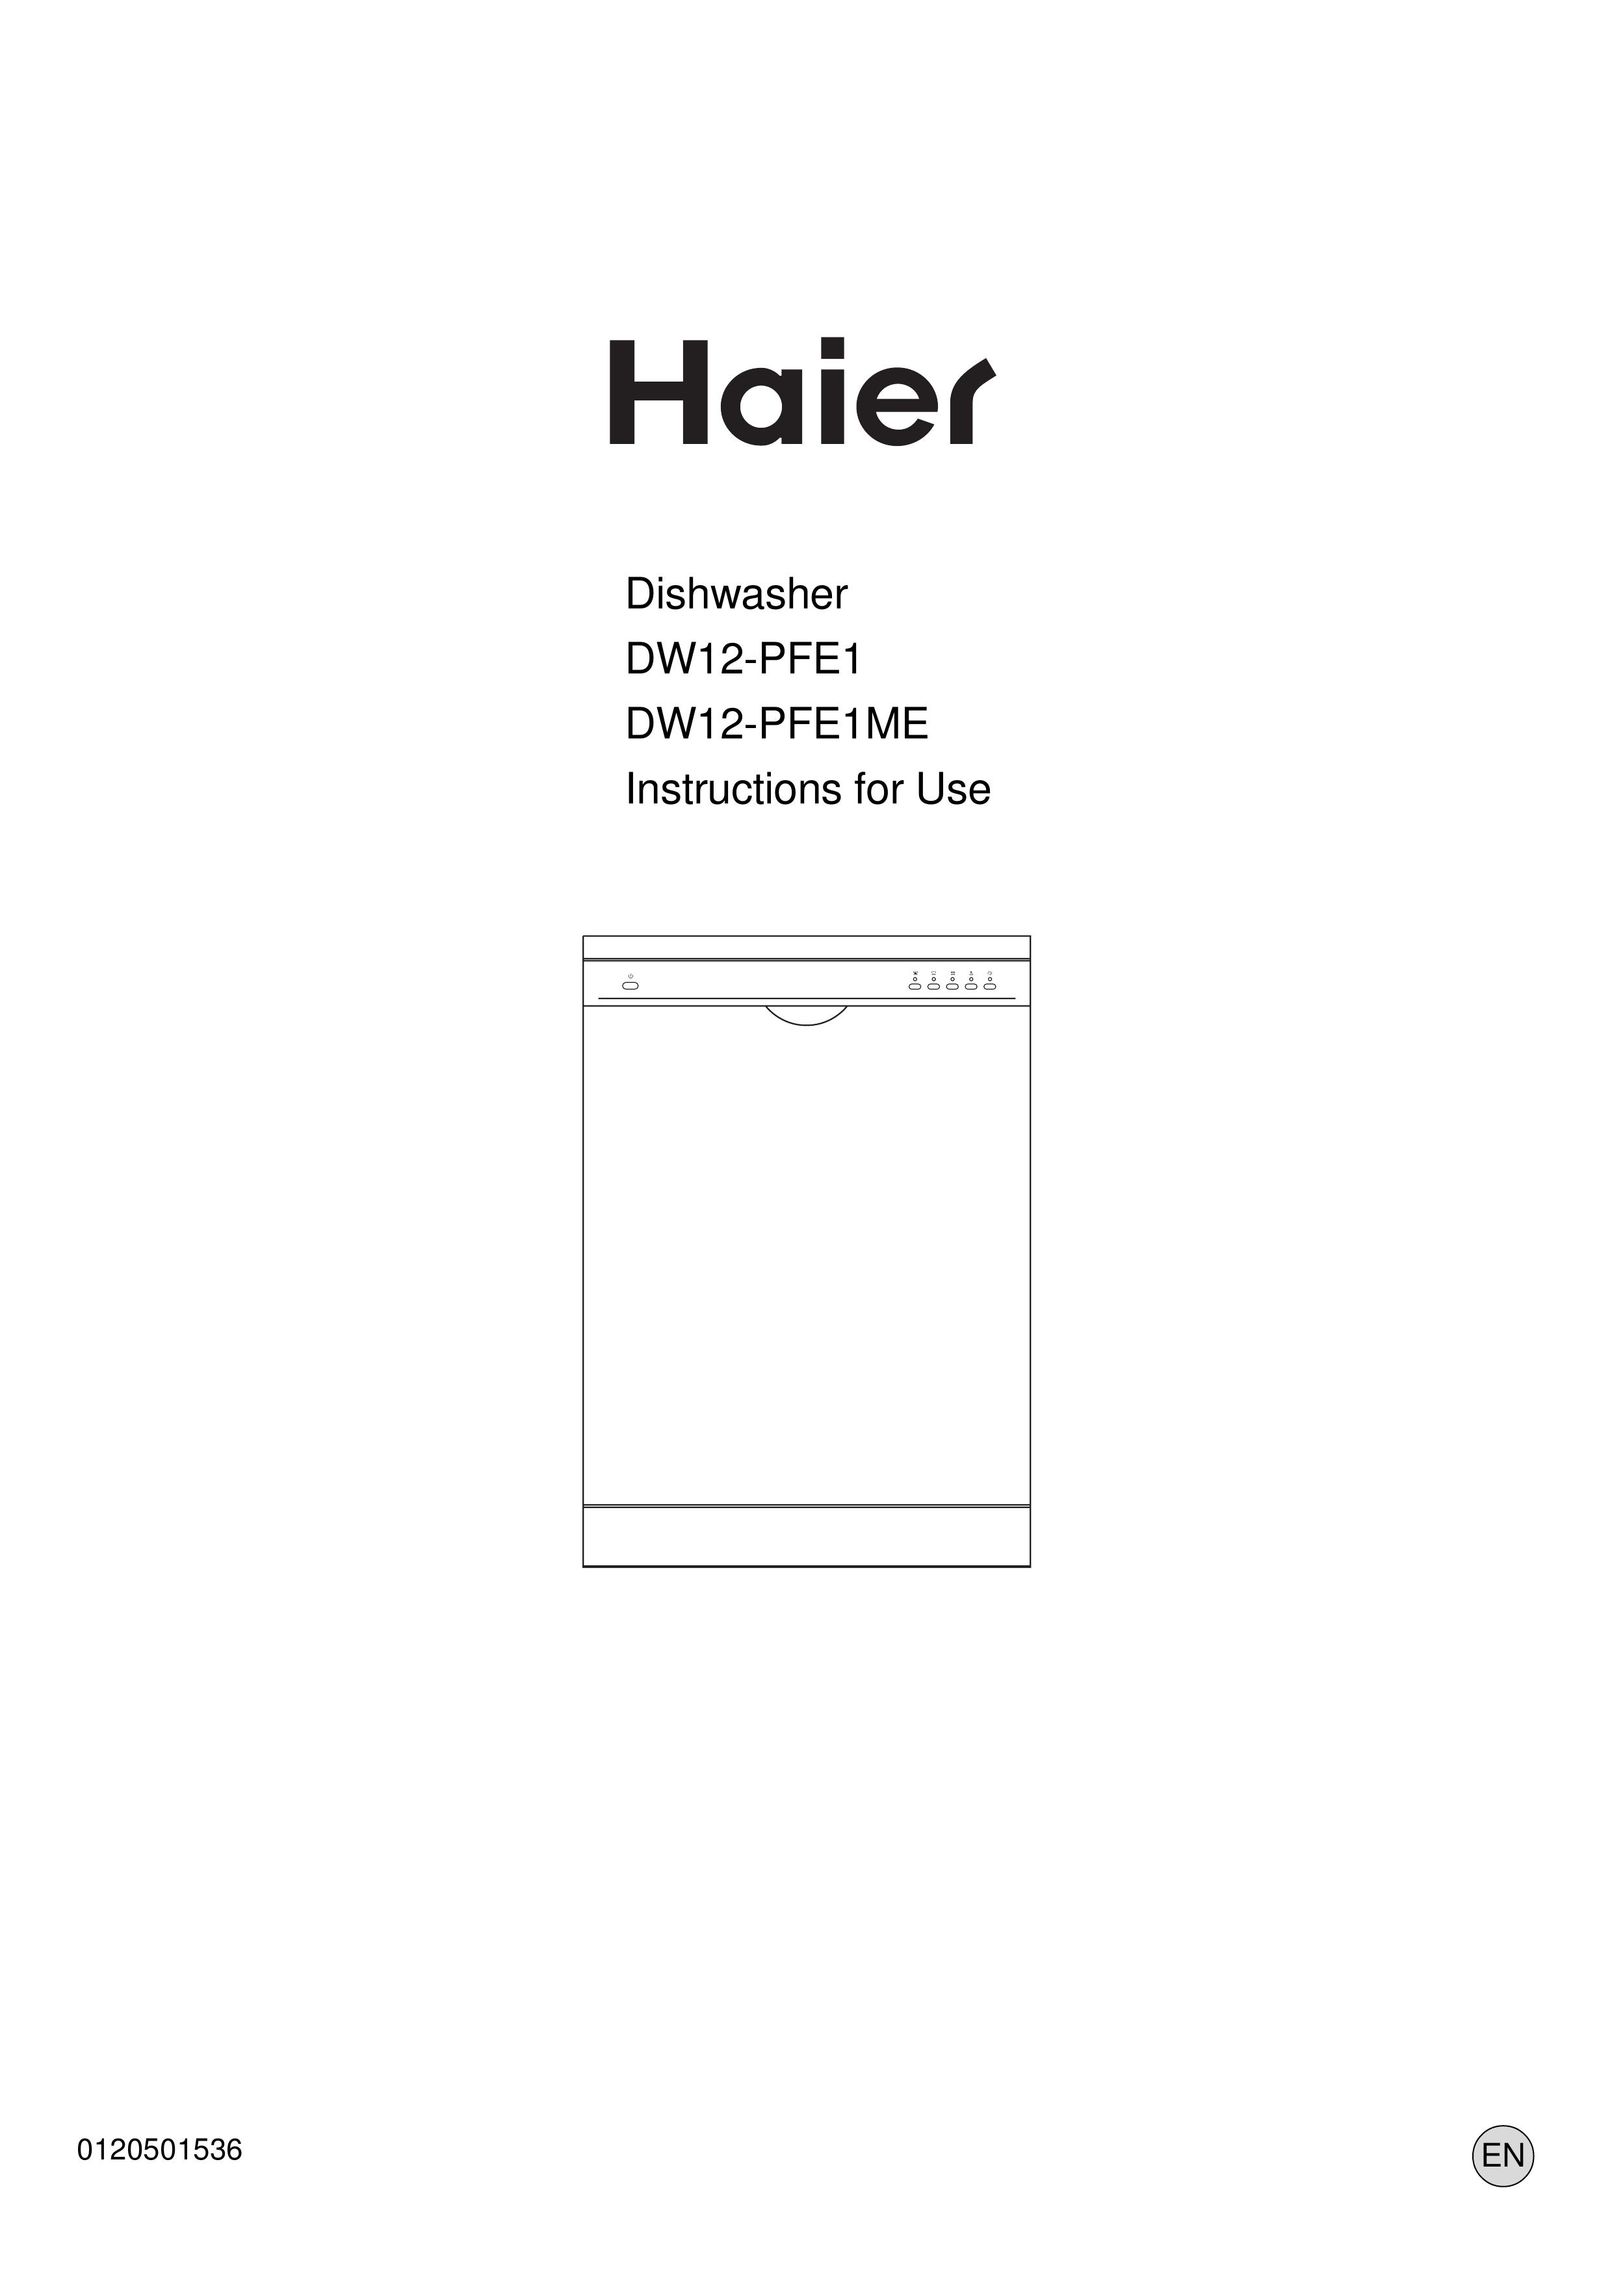 Haier DW12-PFE1ME Dishwasher User Manual